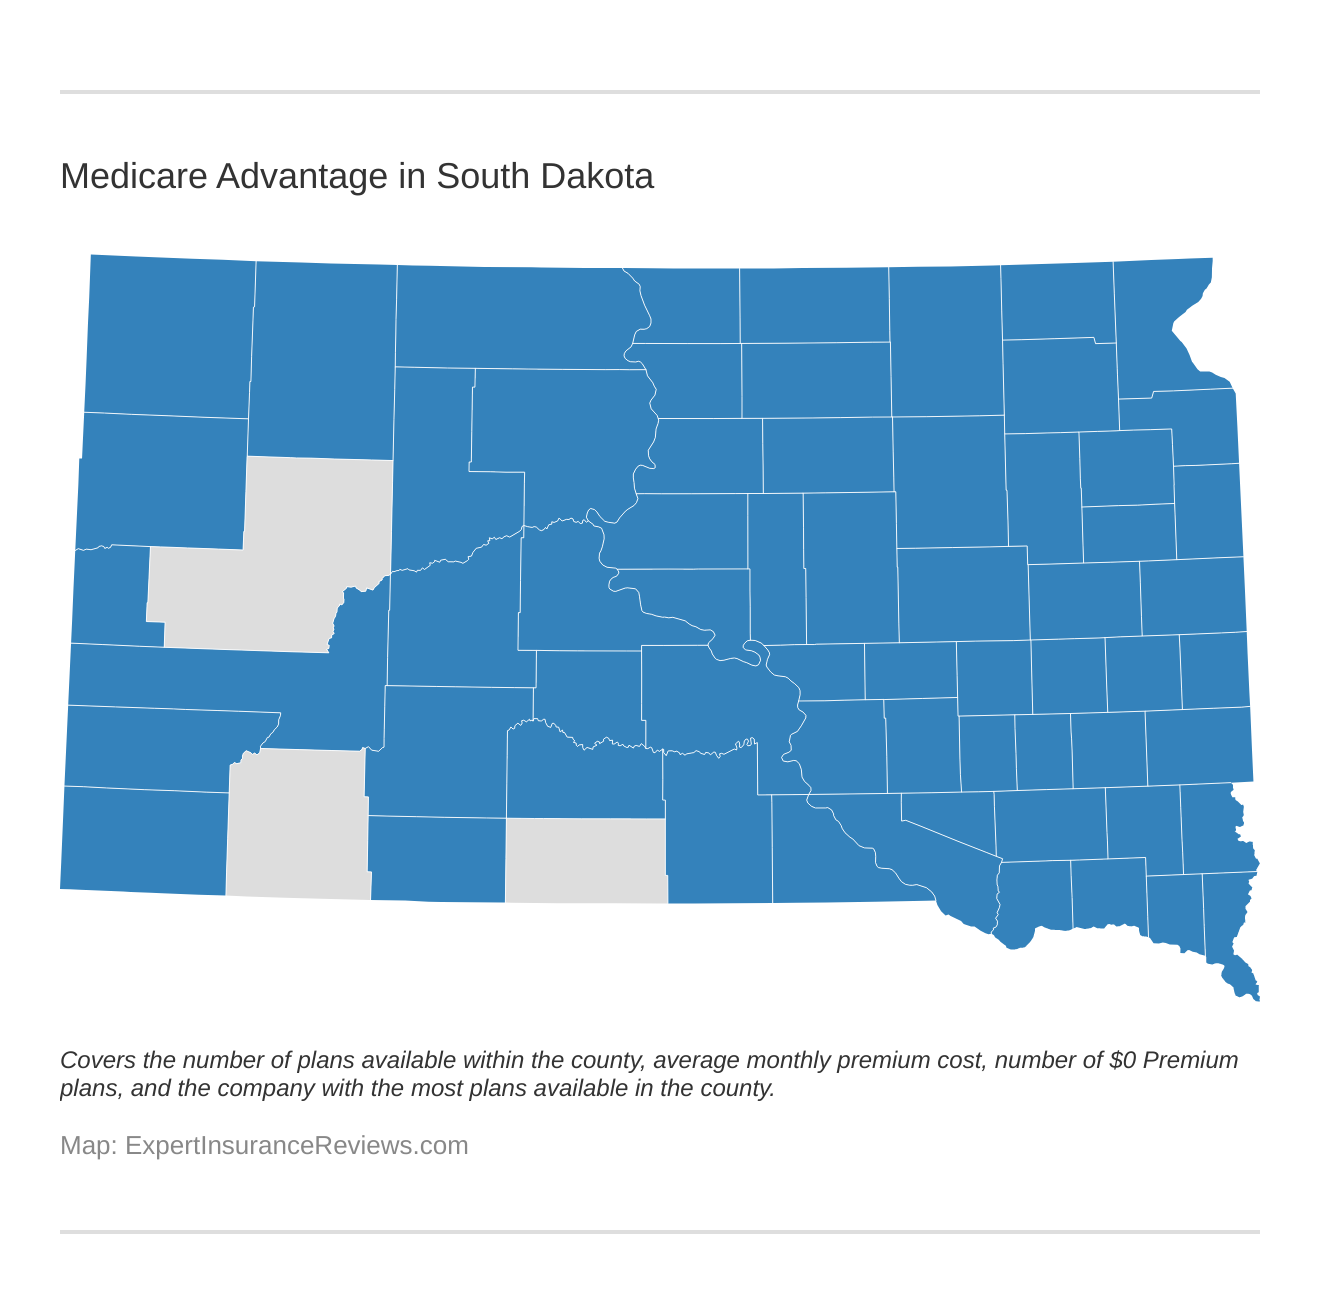 Medicare Advantage in South Dakota